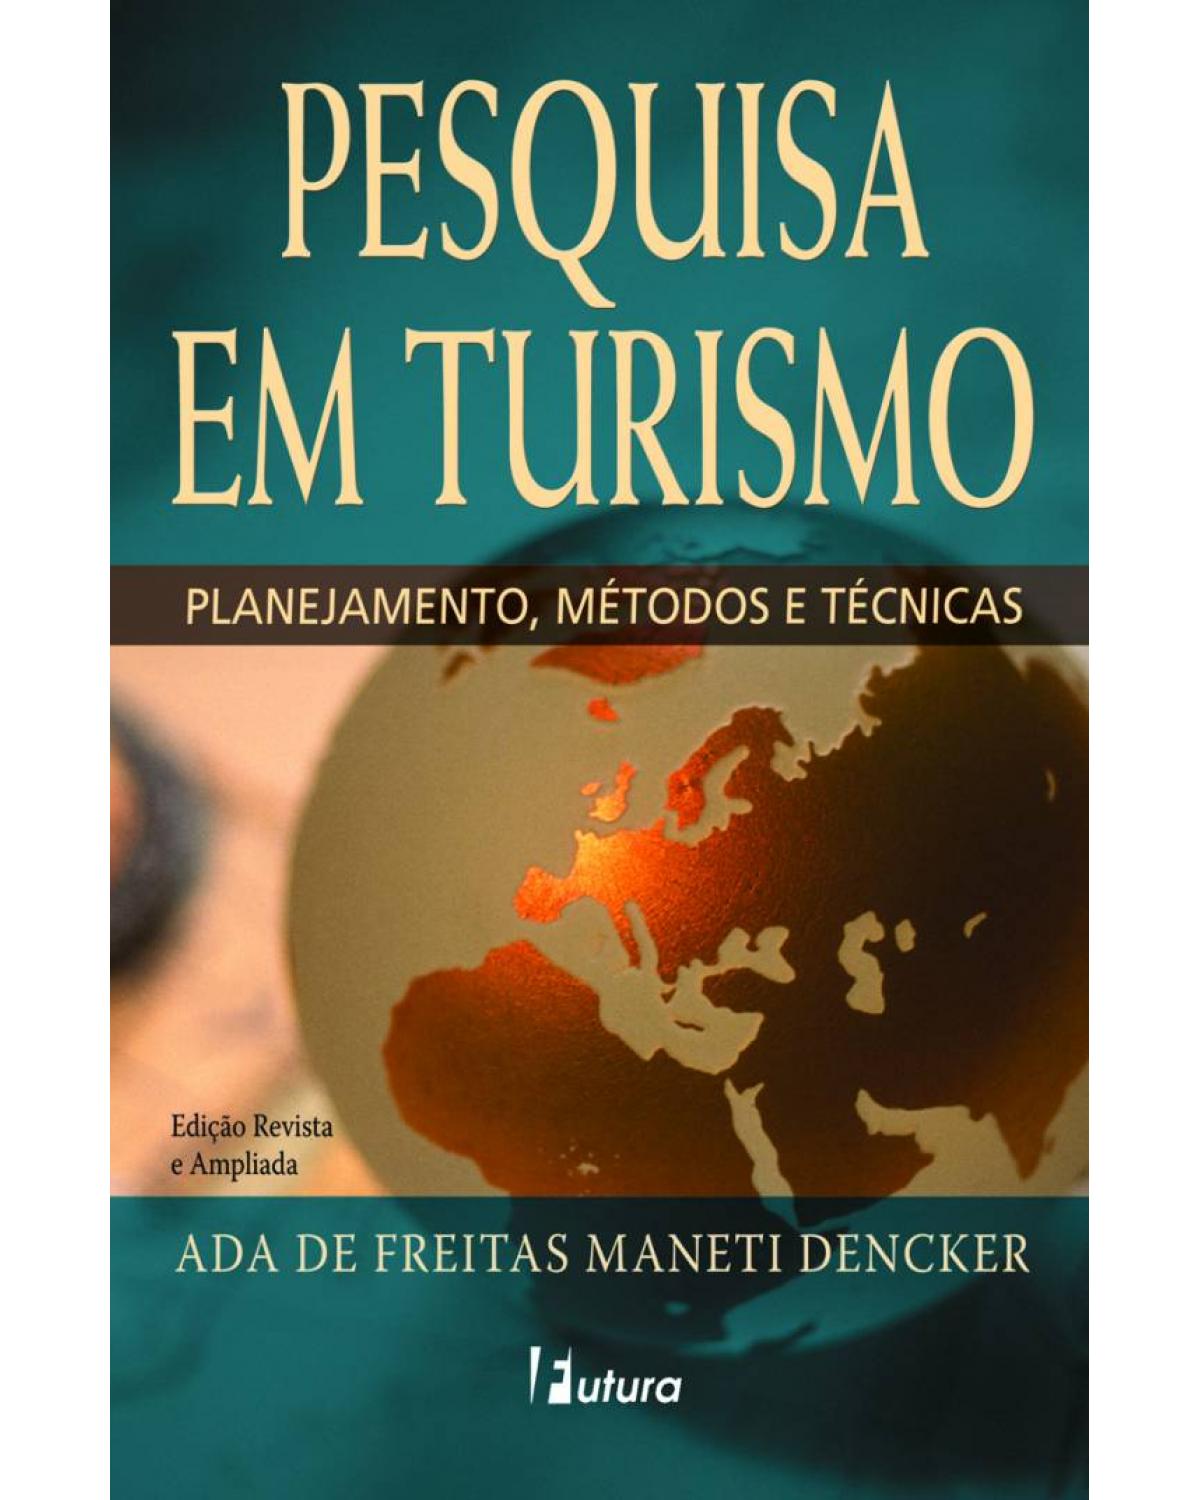 Pesquisa em turismo - planejamento, métodos e técnicas - 9ª Edição | 2016